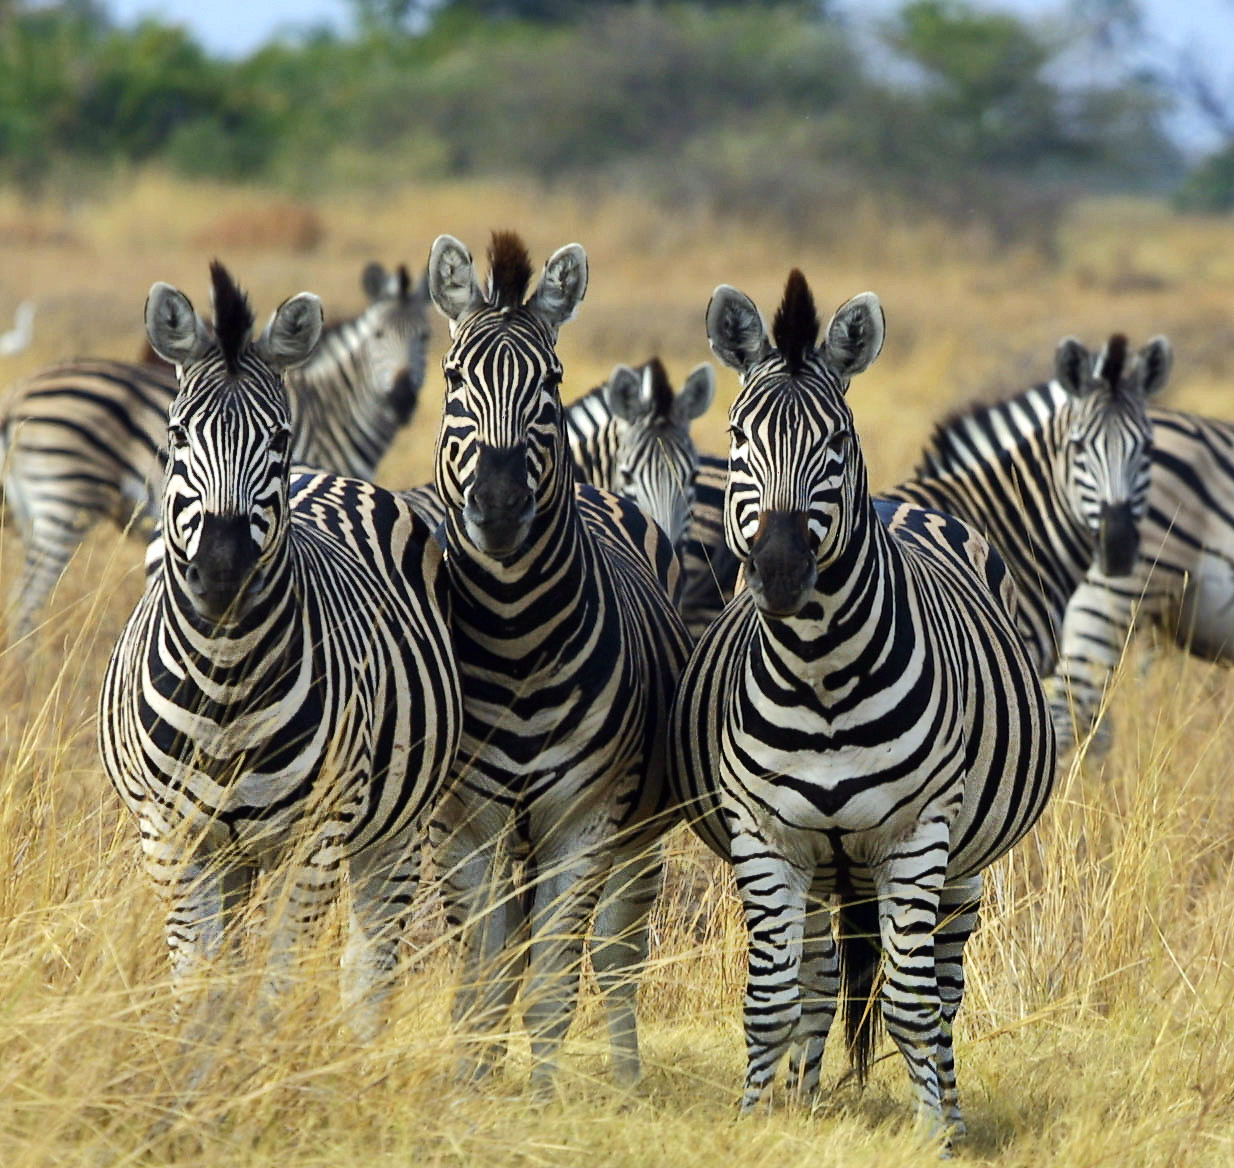 Zebra_Botswana_edit02.jpg